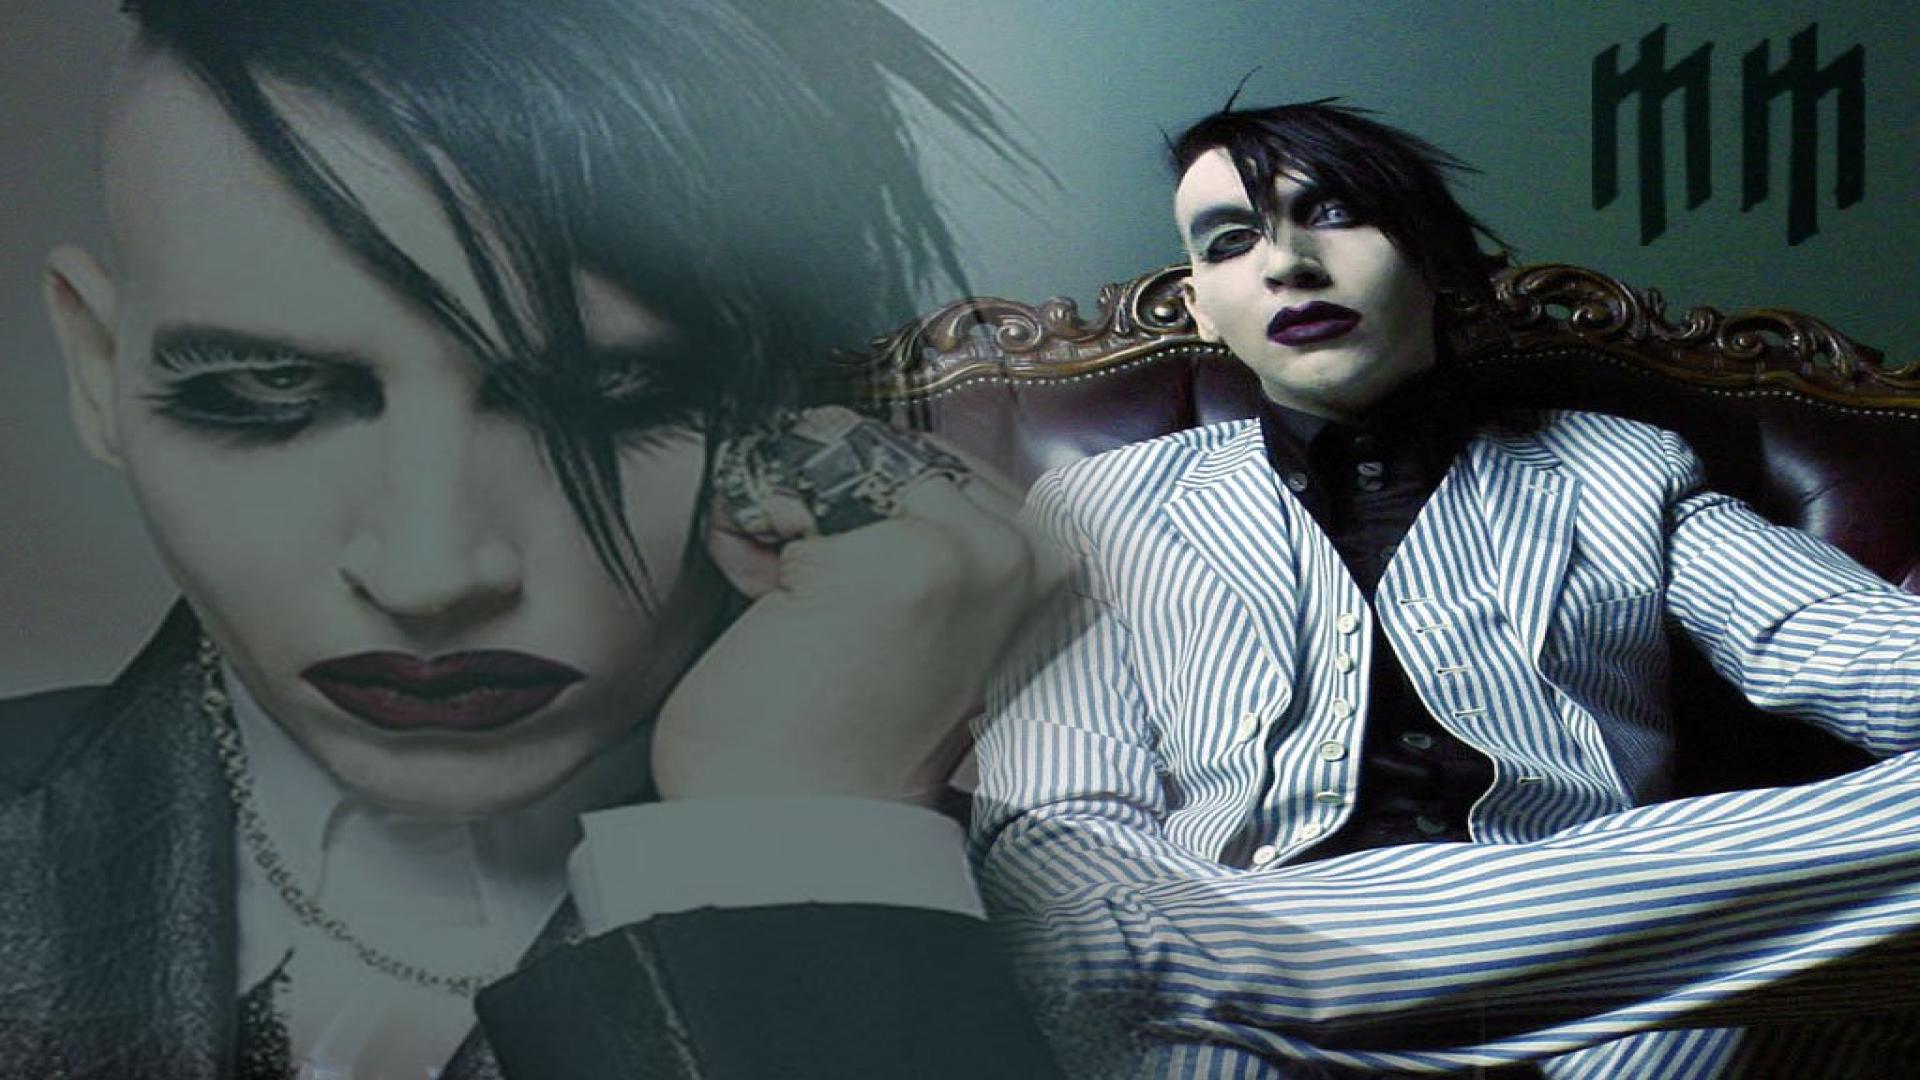 Marilyn Manson Wallpapers - Imagenes De Marilyn Manson Hd , HD Wallpaper & Backgrounds